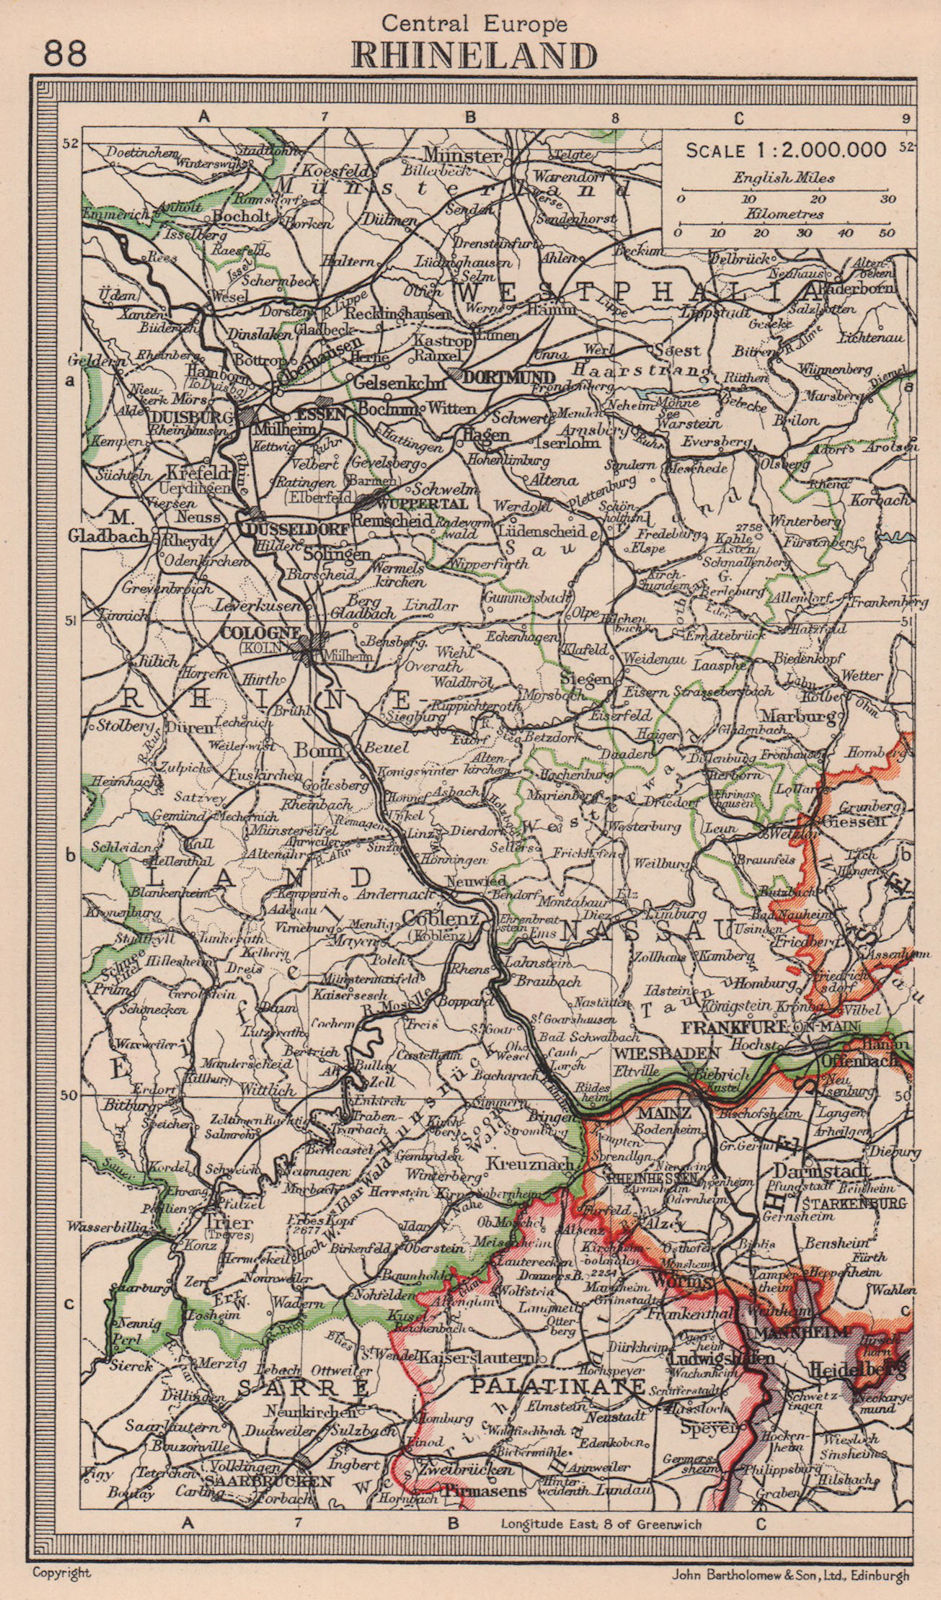 Associate Product Rhineland. Westphalia. Germany. BARTHOLOMEW 1949 old vintage map plan chart